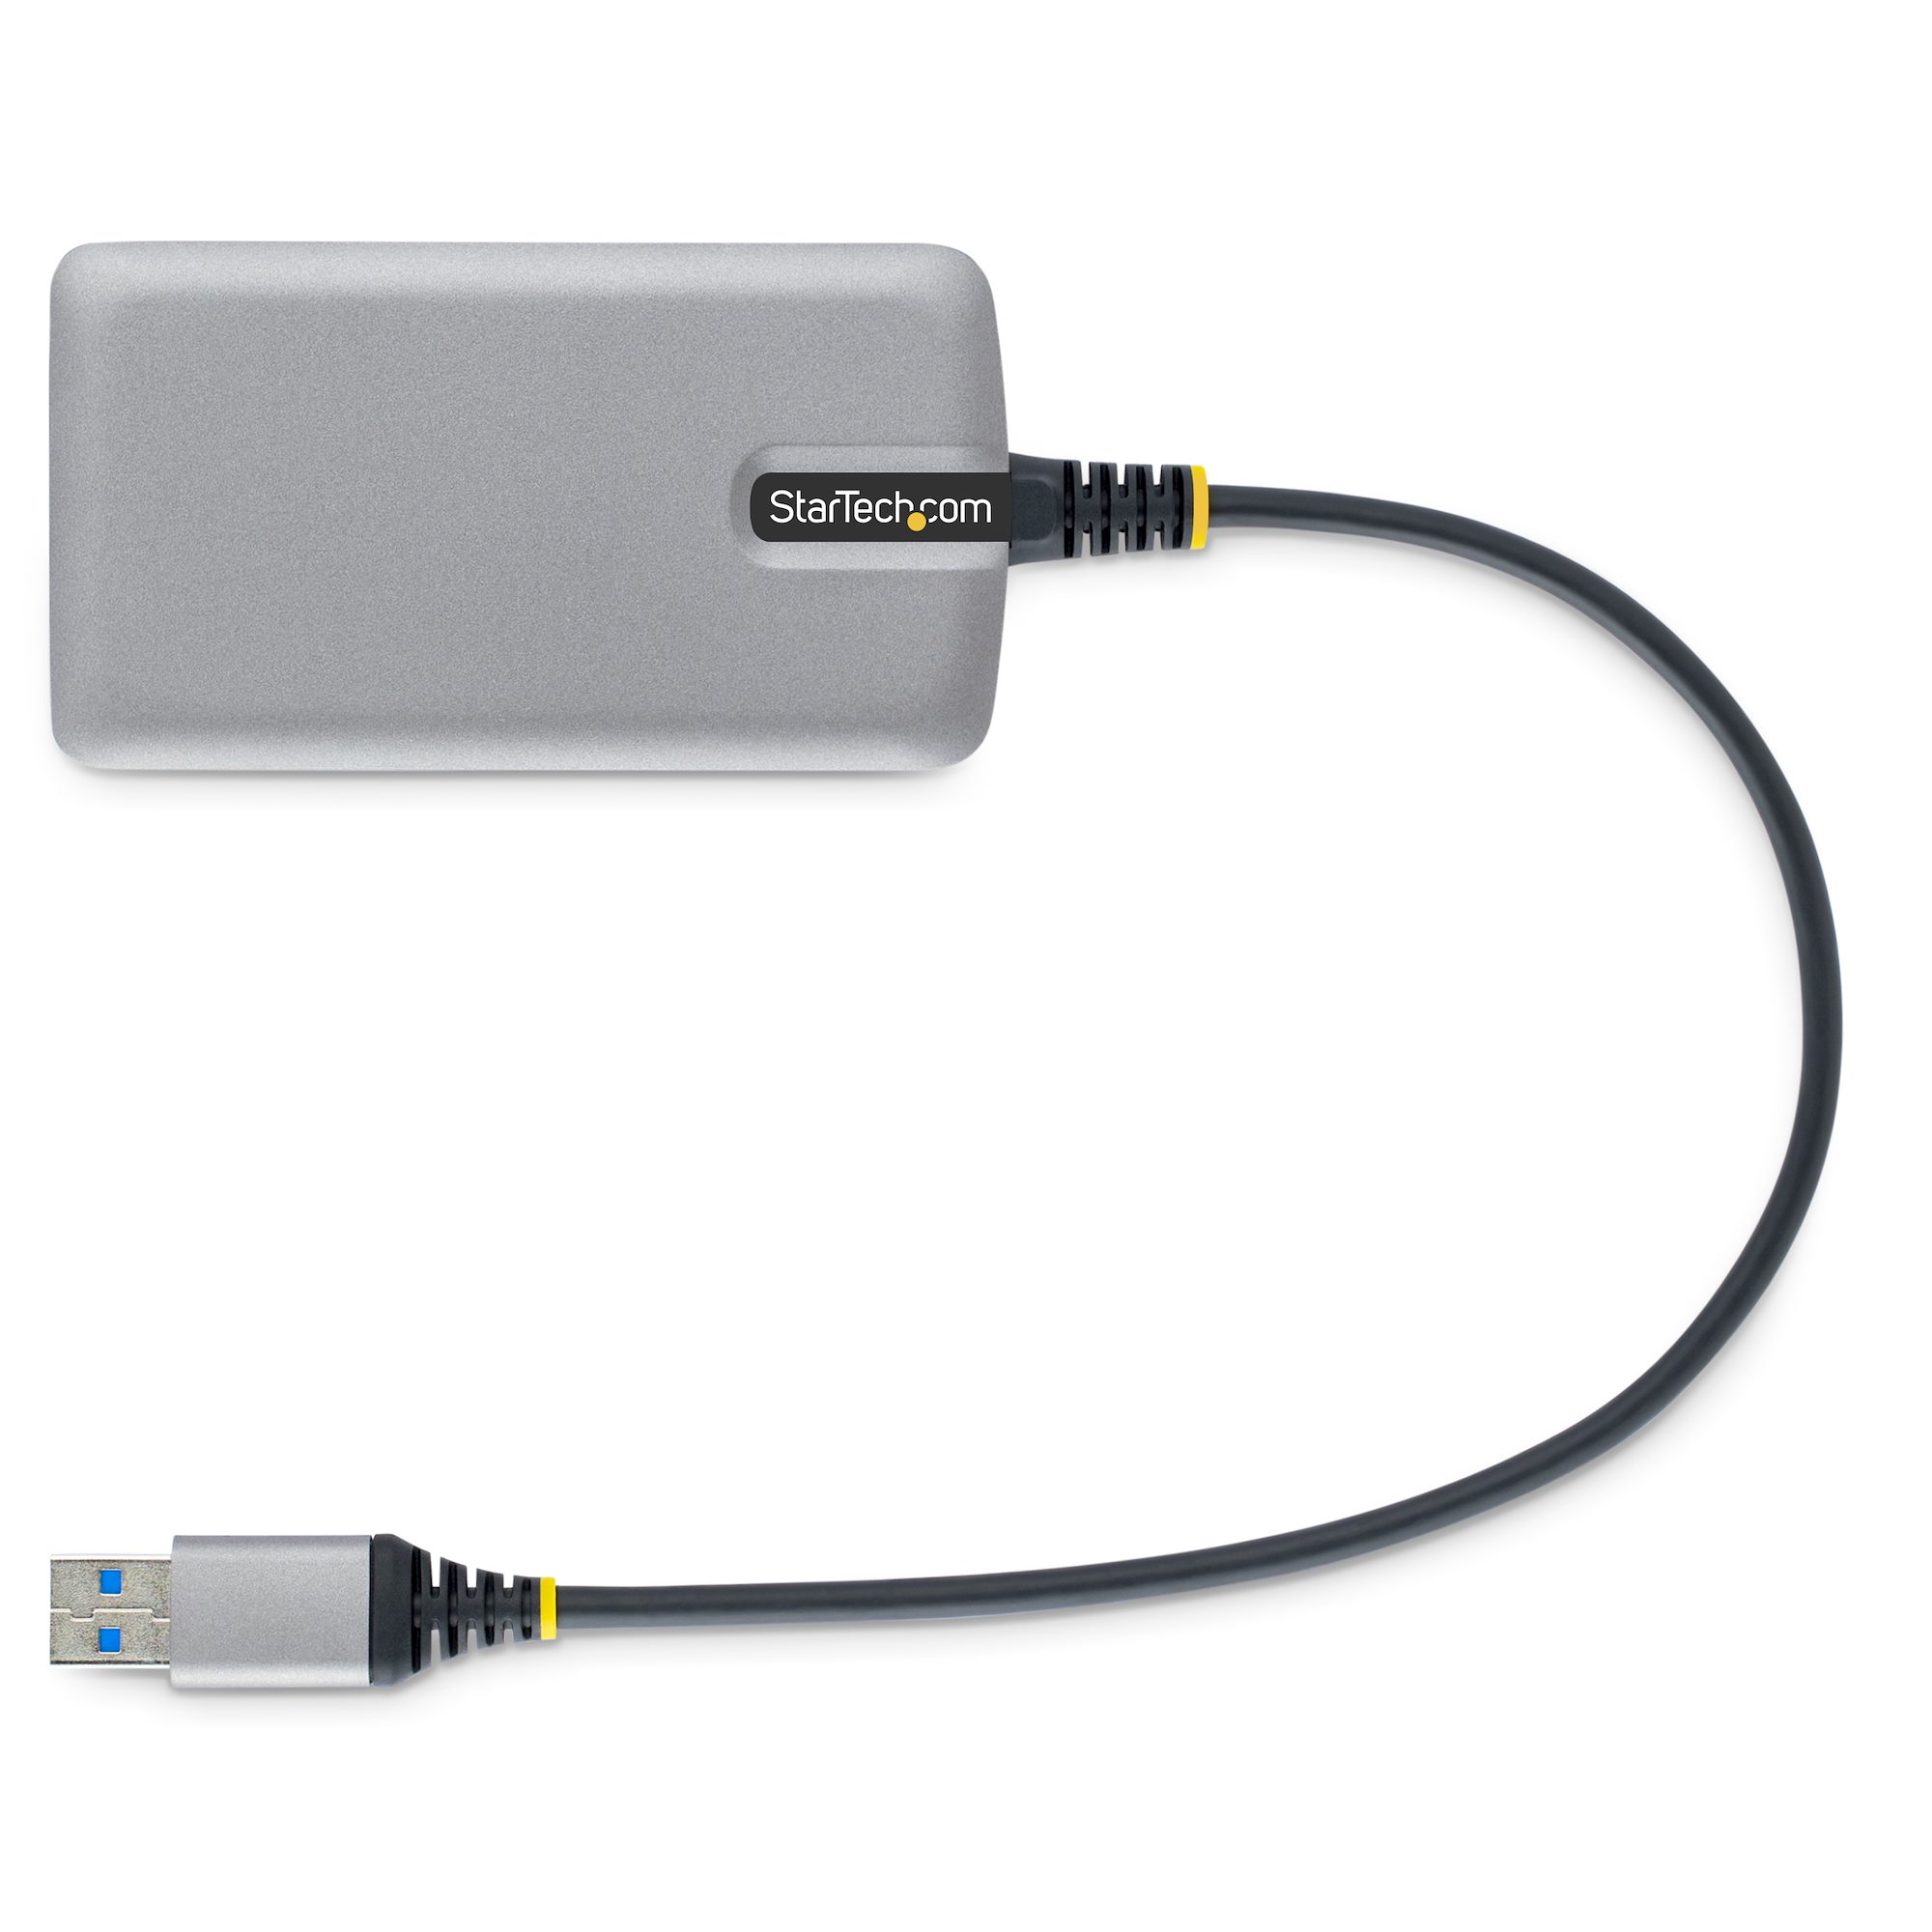 StarTech.com Hub Ladrón USB 3.0 4 Puertos - USB-A a USB 3.0 Tipo A con  Interruptores Individuales de Encendido/Apagado - USB 3.2 Gen 1 SuperSpeed  5Gbps - Alimentado por el Bus USB - Portátil - Cable de 25cm